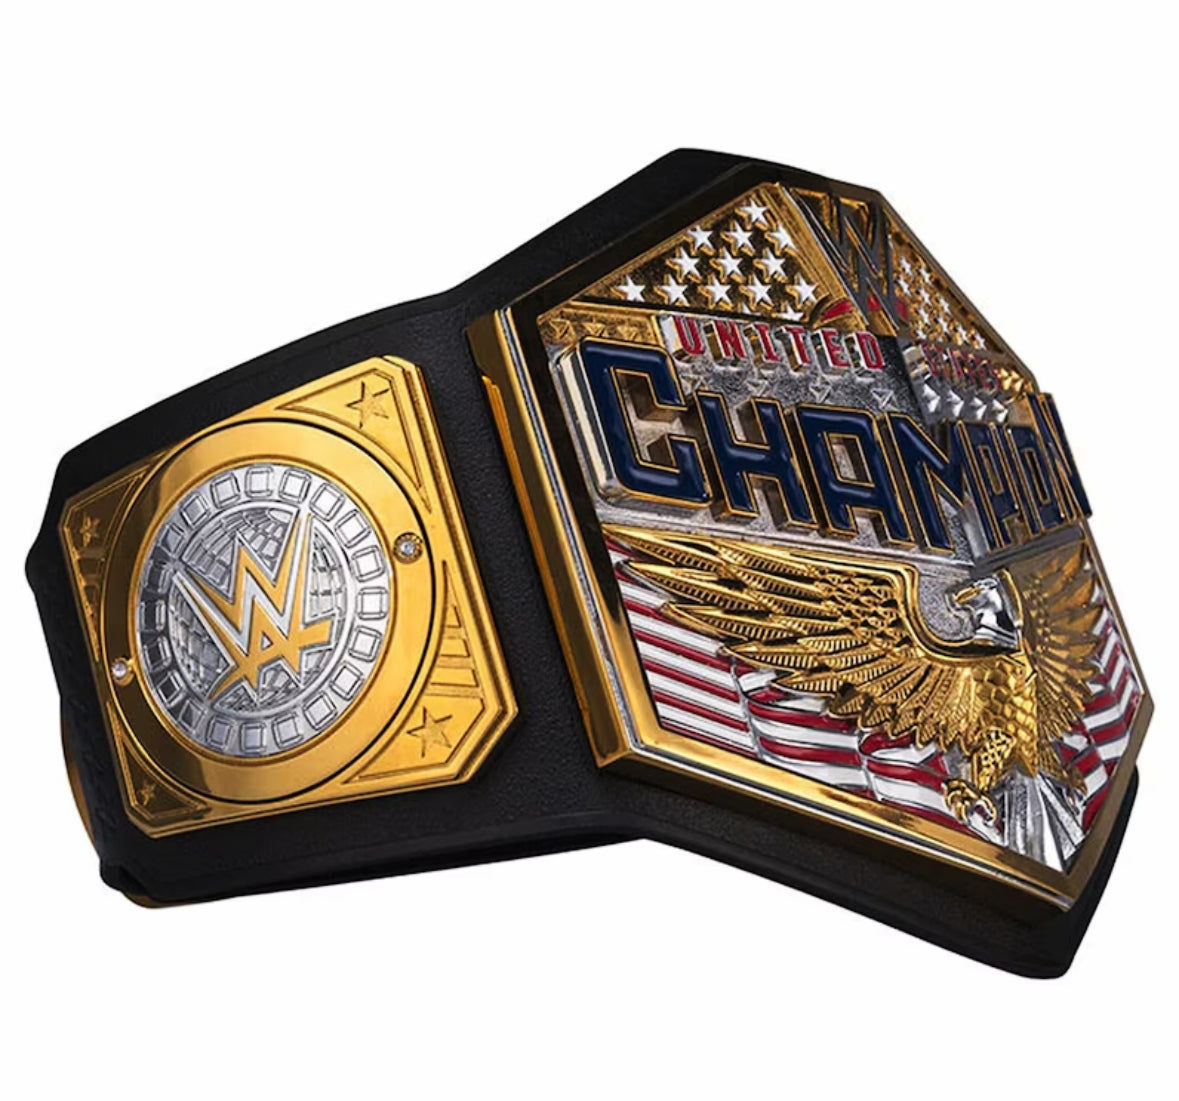 New WWE USA Championship Title Belt 2MM - United States World Heavyweight Wrestling Replica Belt - WWE Champion Belt